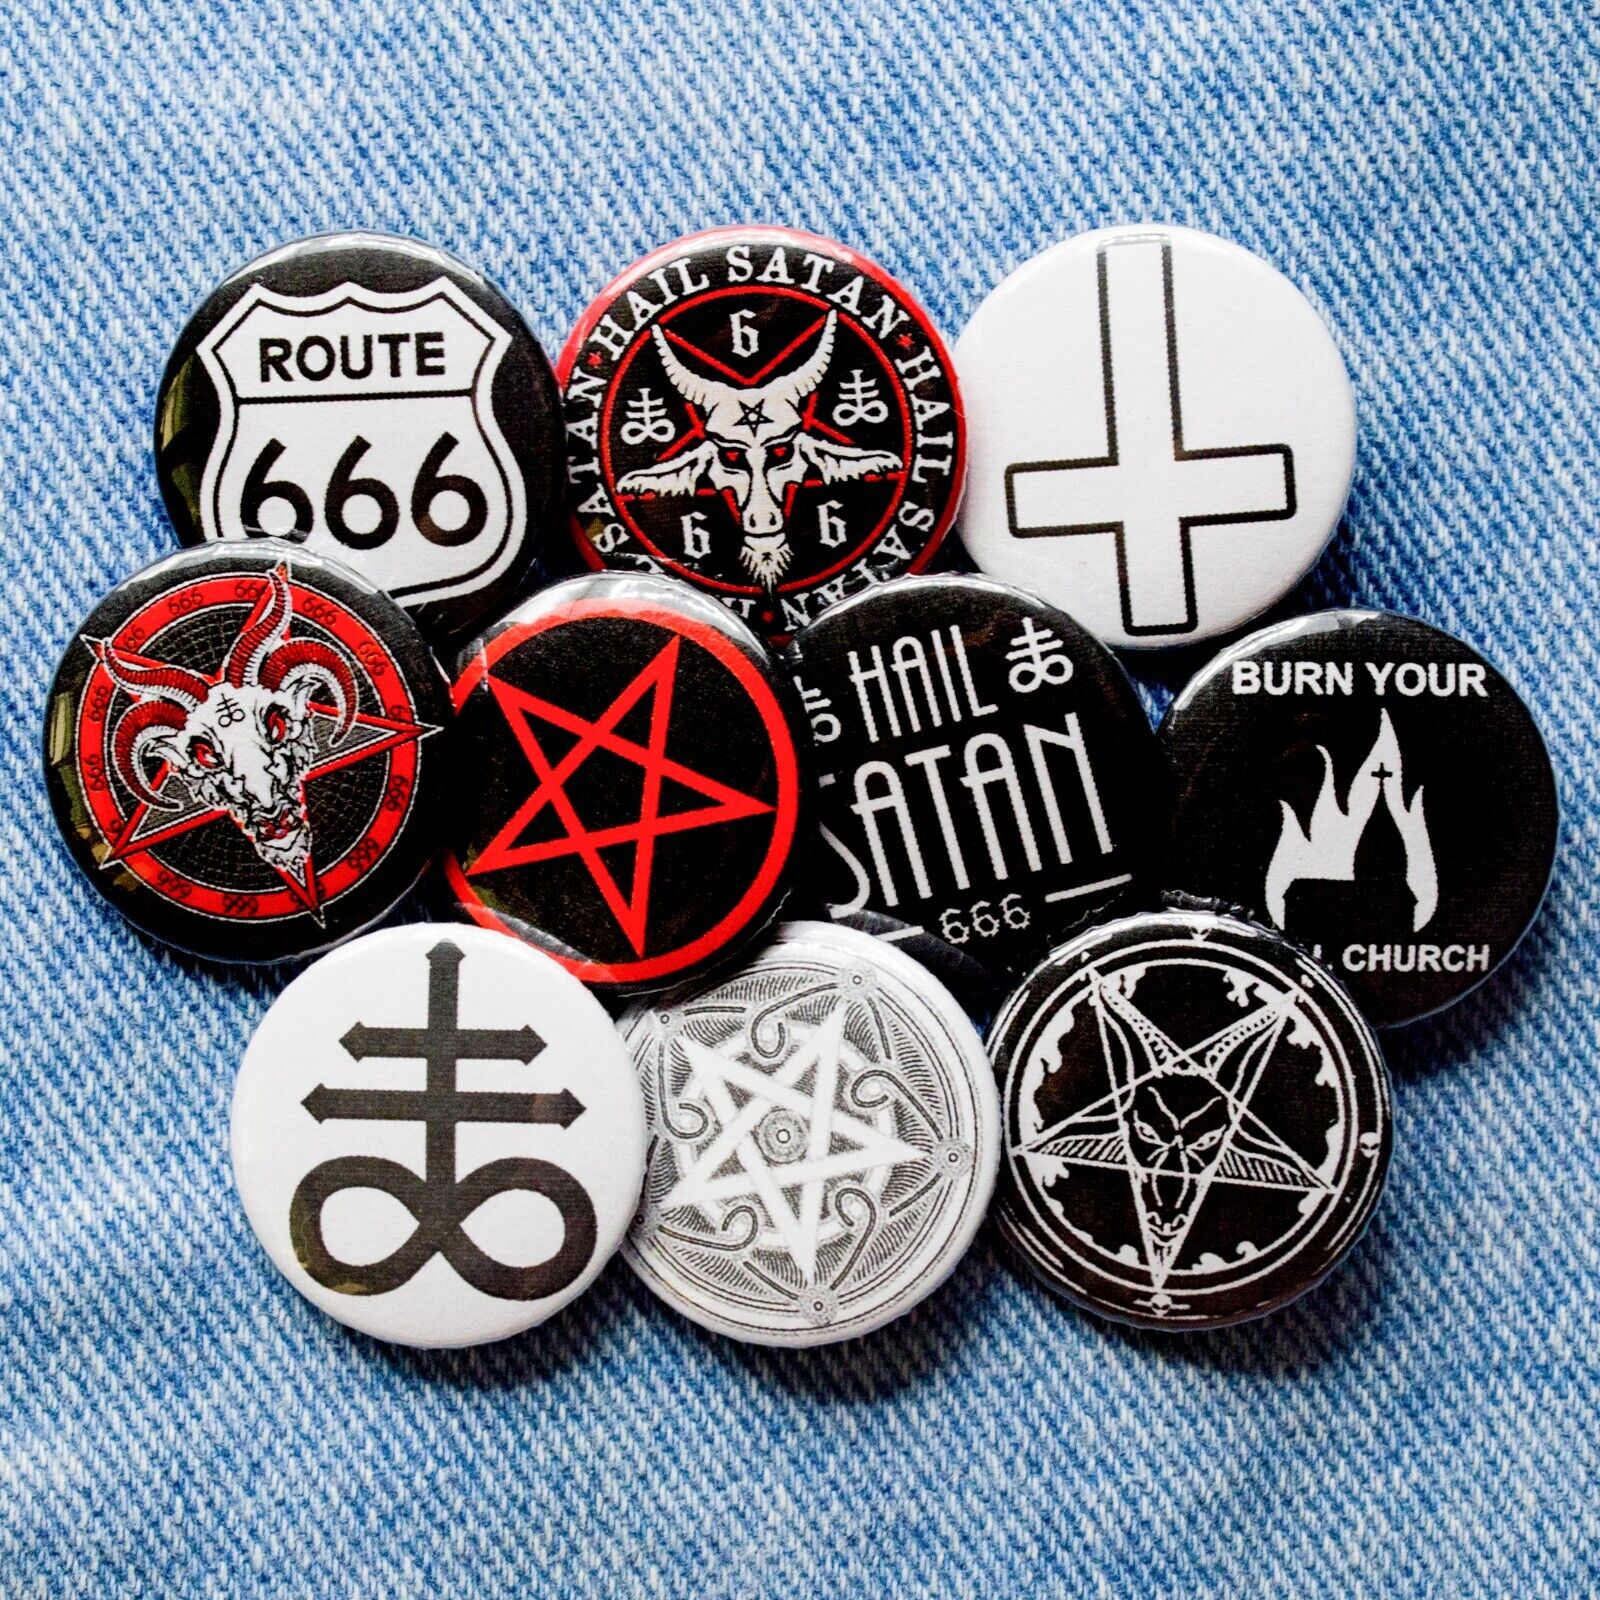 Button badge pins Pentagram Baphomet Satan 666 occult symbol black metal 10 item